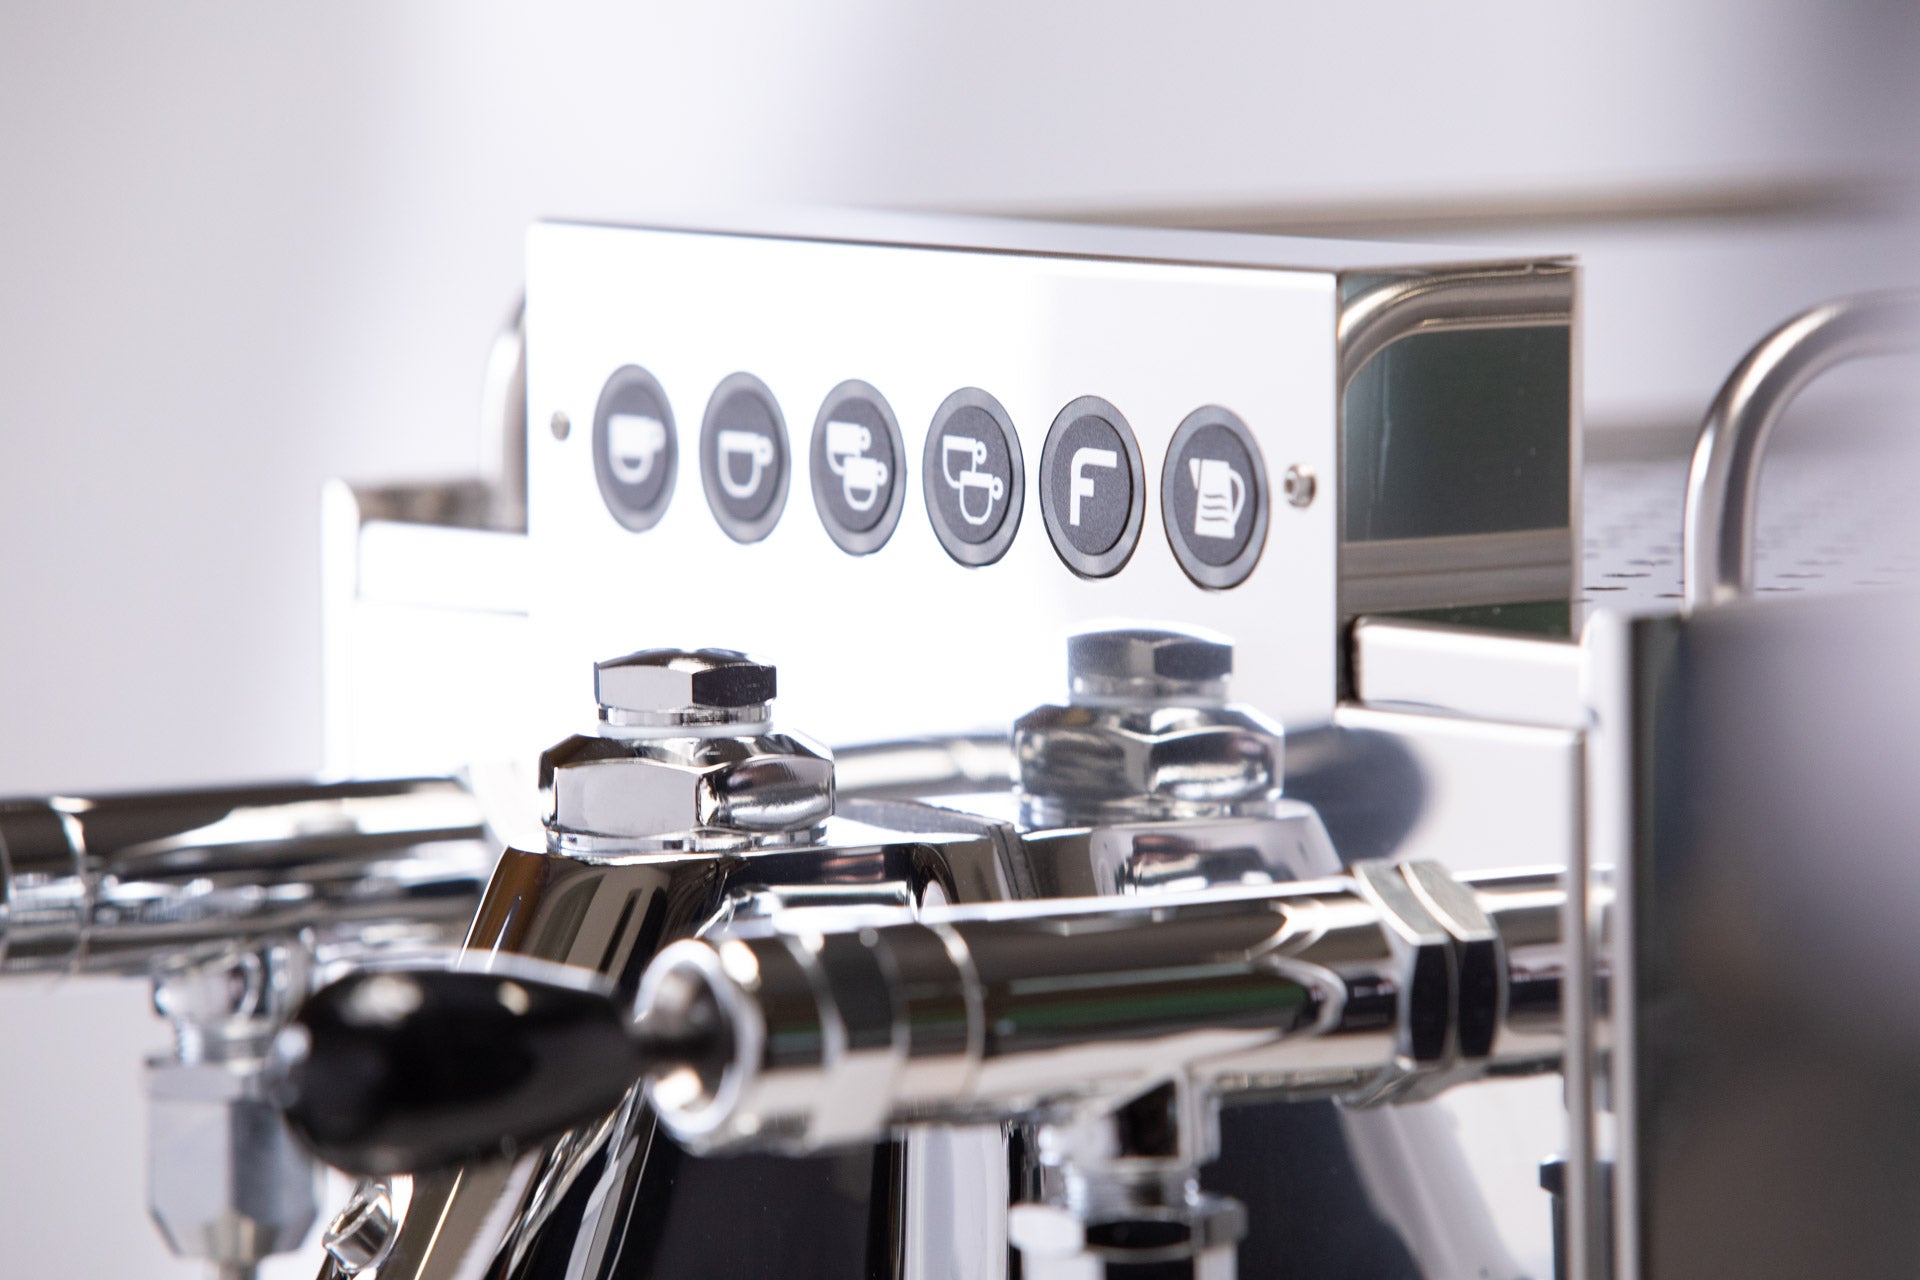 Emy Evo AUTO Espresso Machine